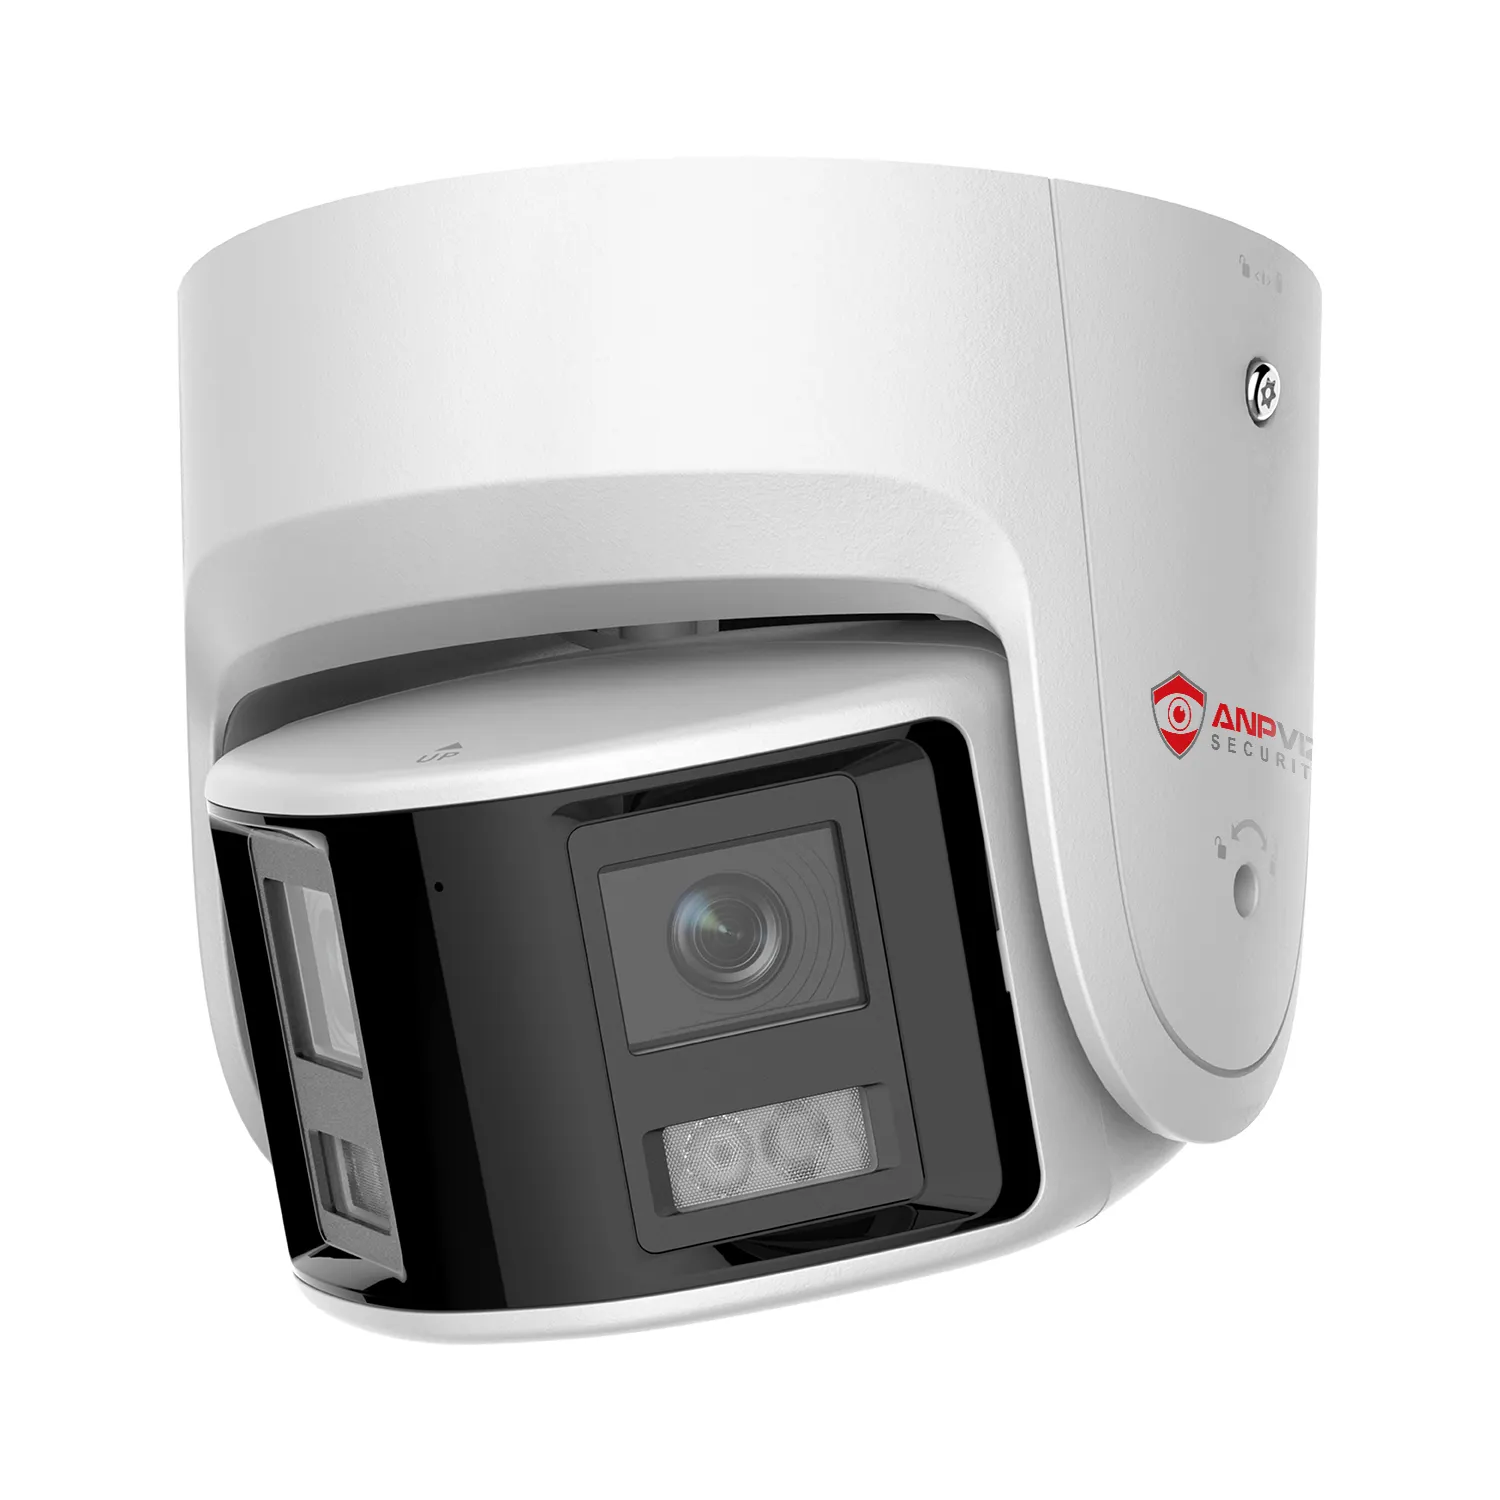 ANPVIZ telecamera IP POE CCTV 6MP telecamera panoramica a doppia lente immagine a 180 gradi rilevamento umano/veicolo suono e allarme flash conversazione a 2 vie